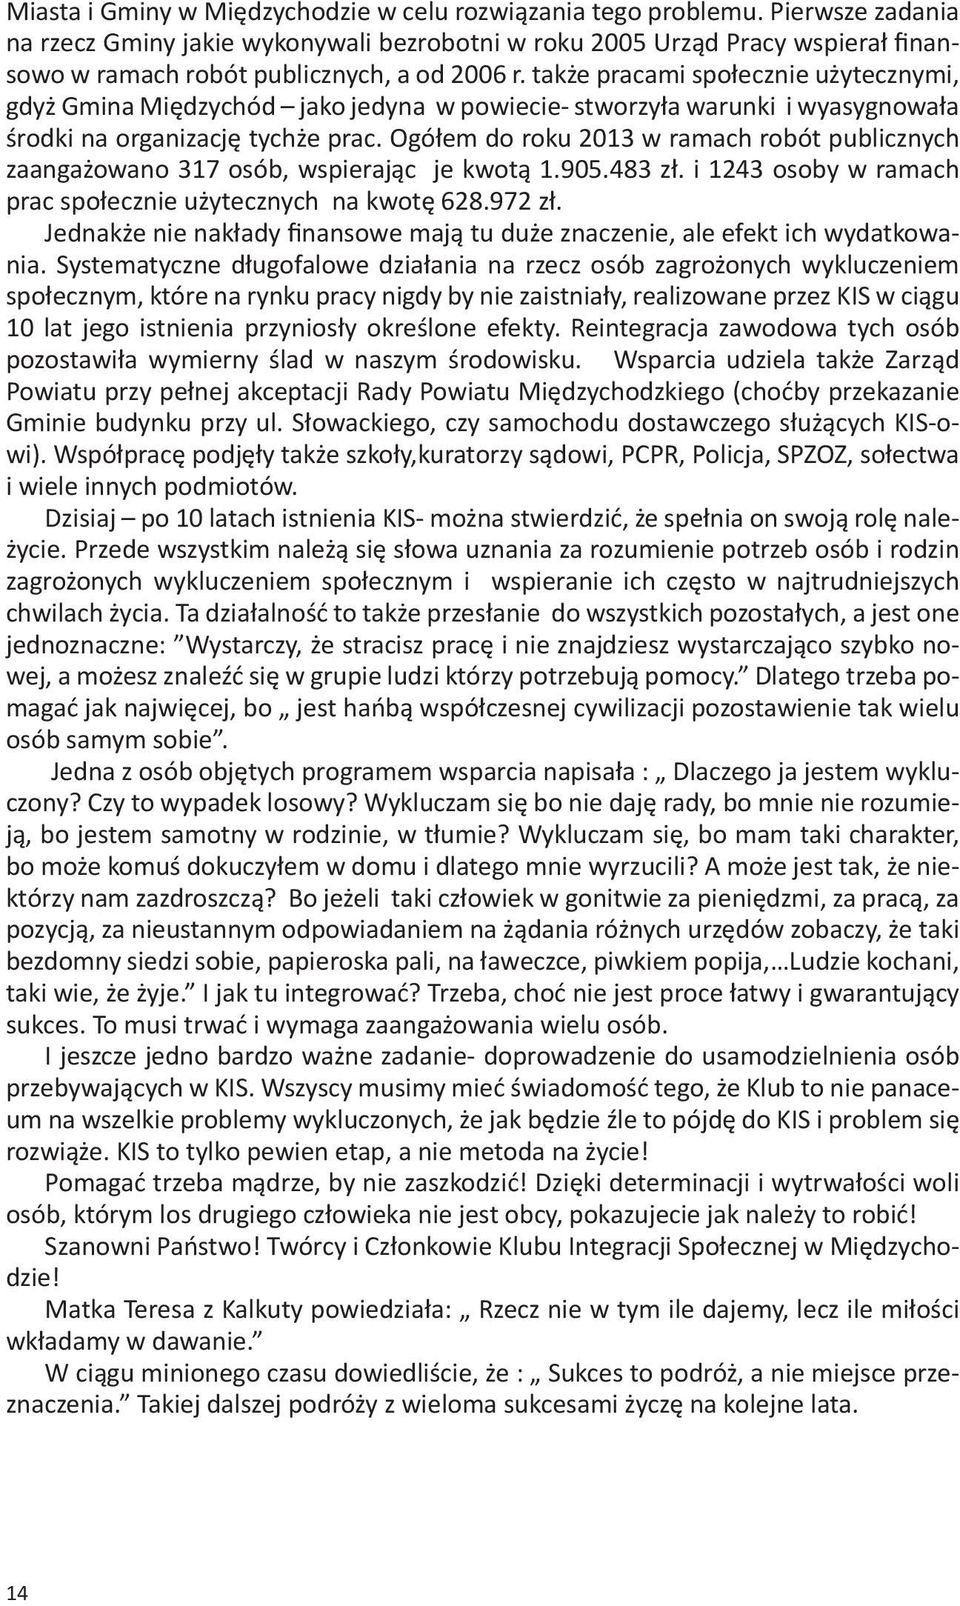 także pracami społecznie użytecznymi, gdyż Gmina Międzychód jako jedyna w powiecie- stworzyła warunki i wyasygnowała środki na organizację tychże prac.